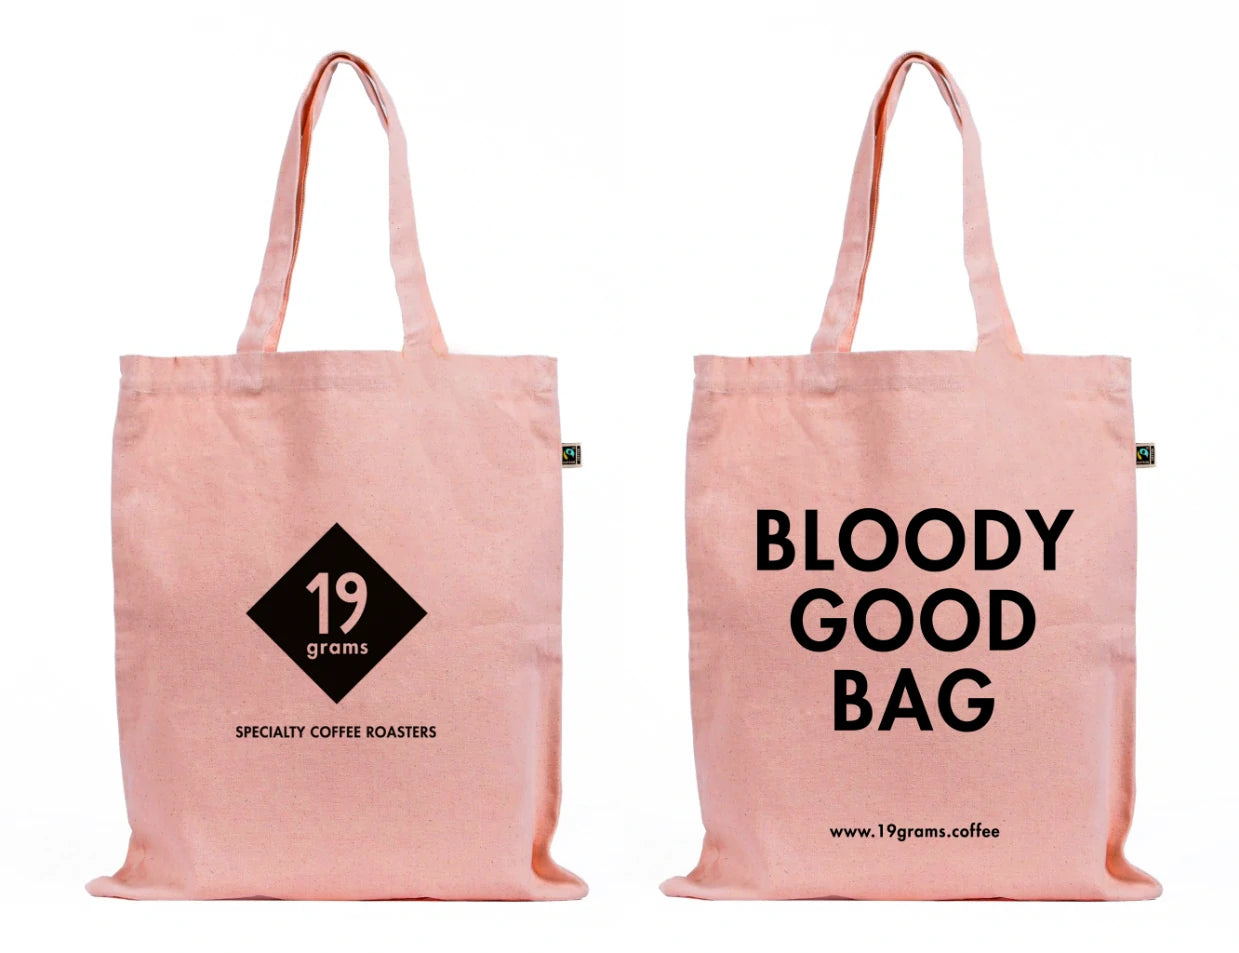 Deine 19grams Tasche in Rosa - eine Bloody Good Bag